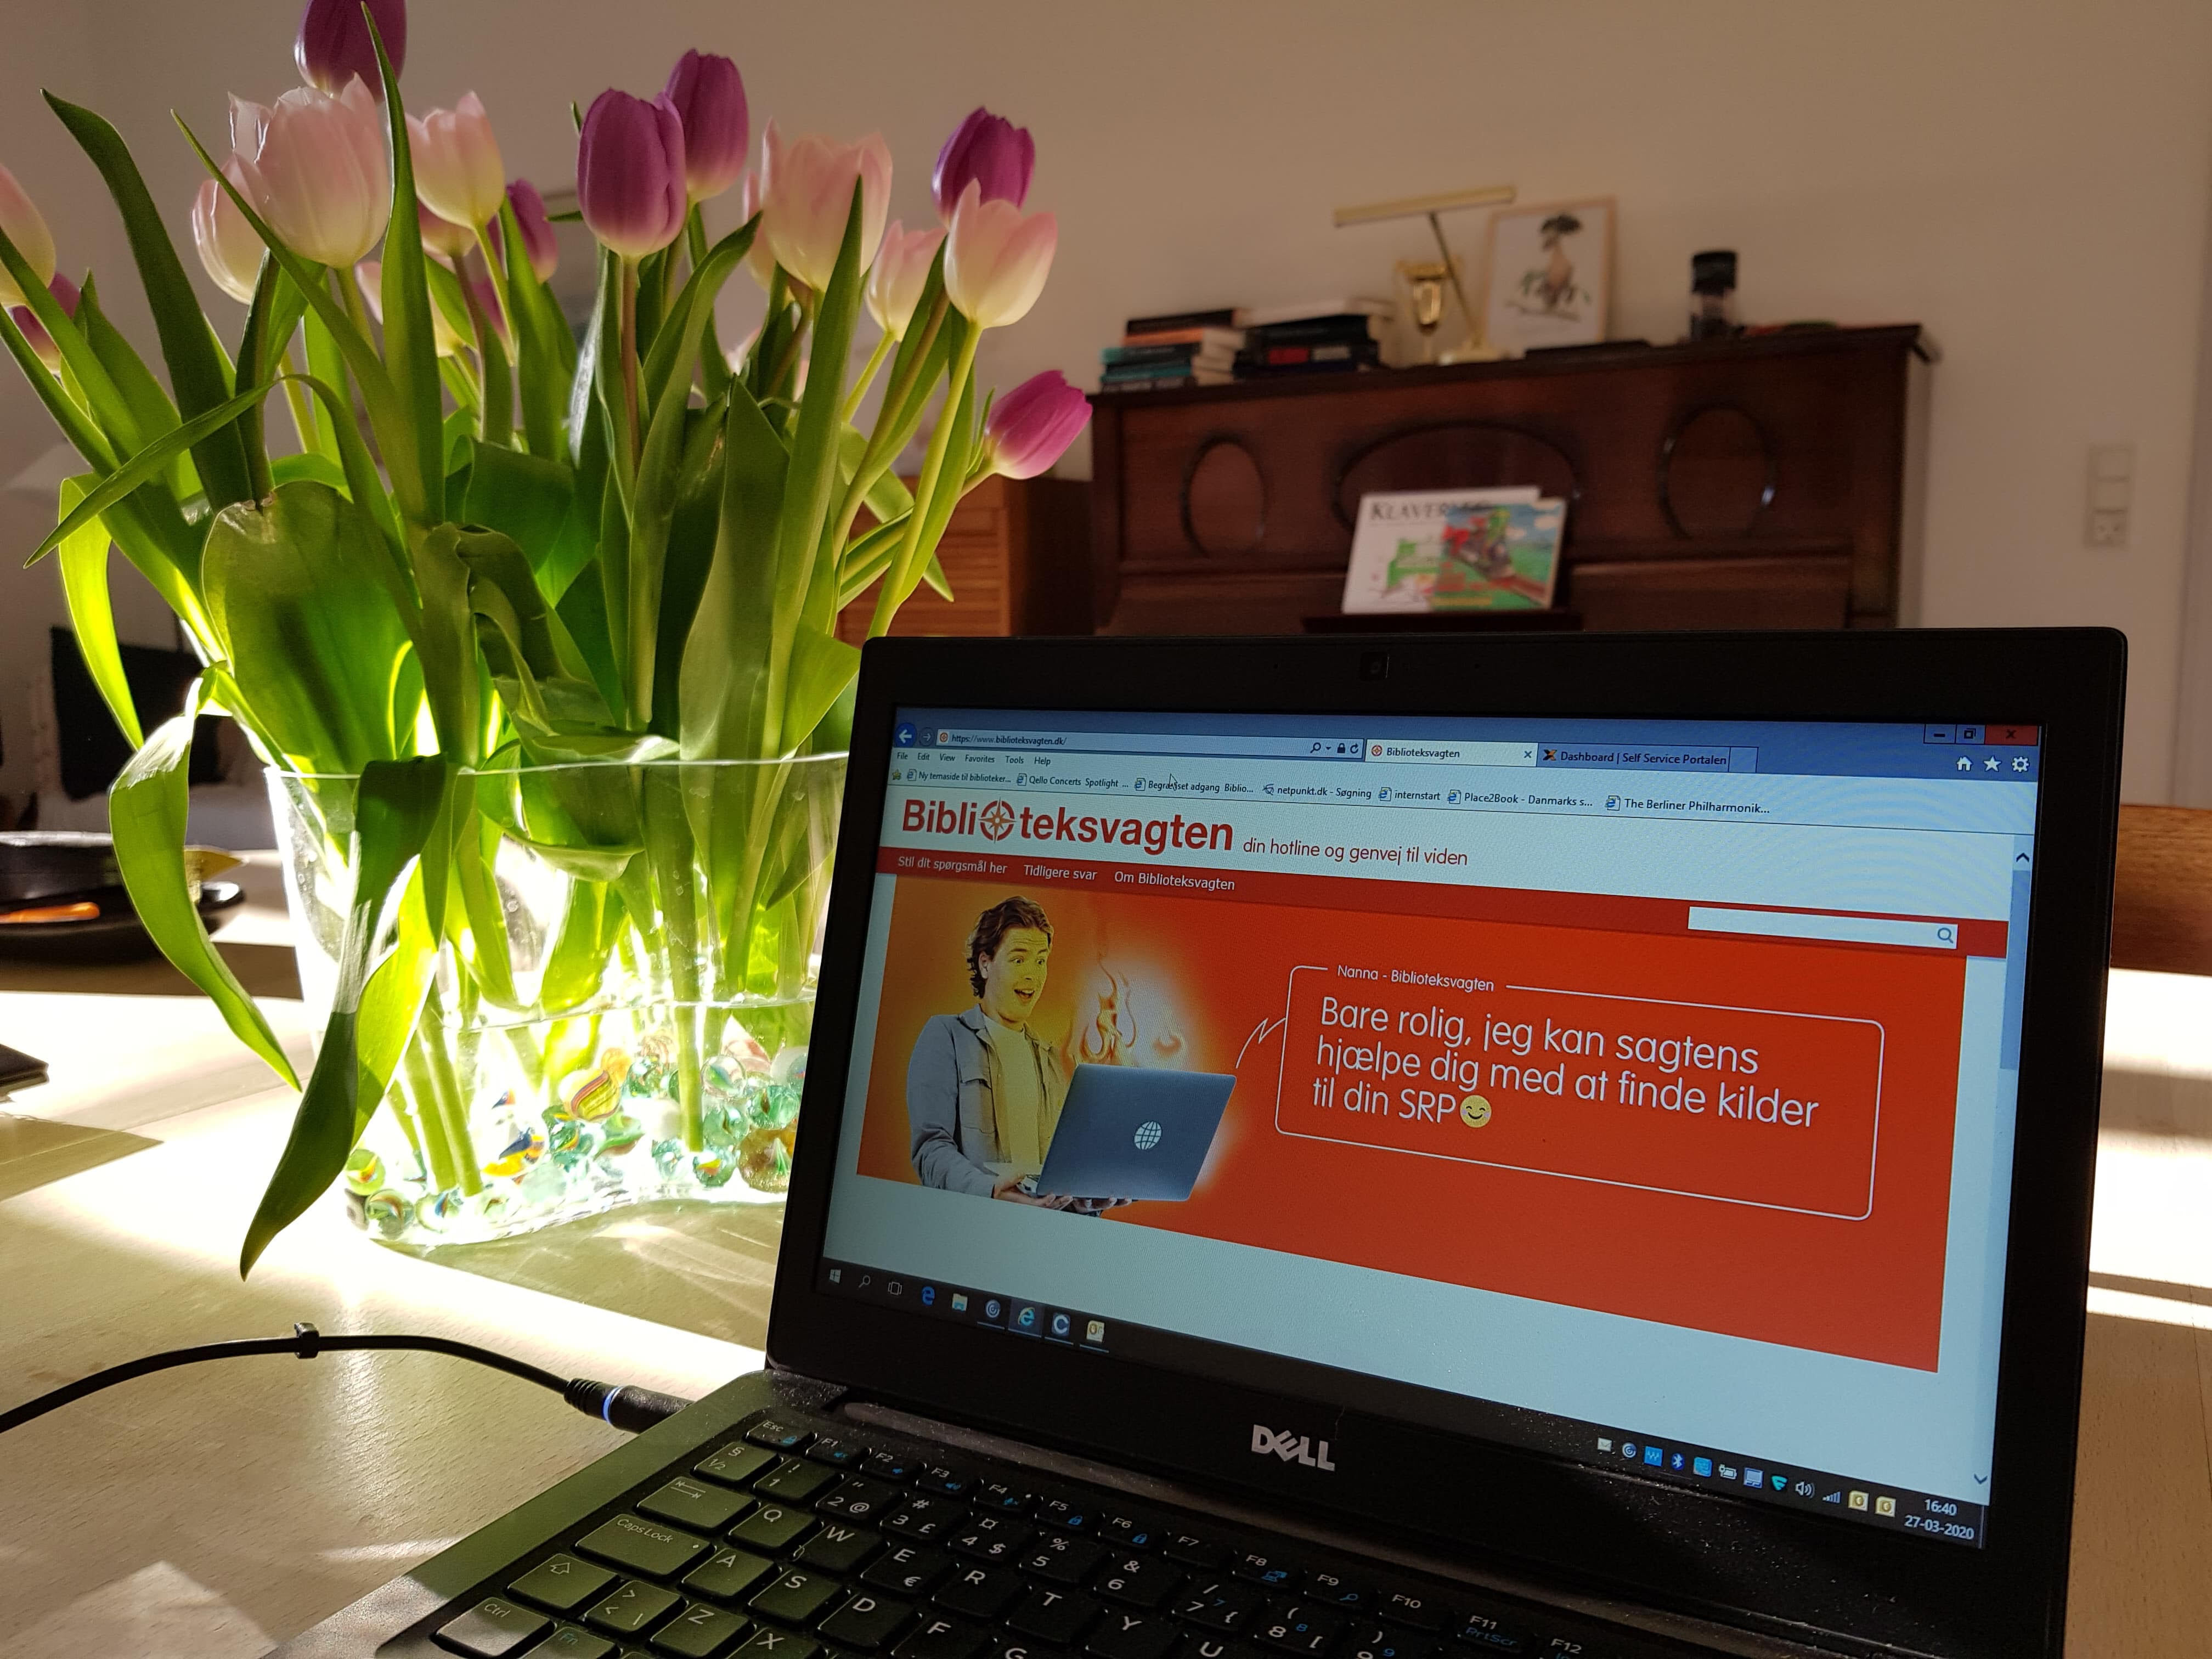 Bærbar computer på spisebordet hjemme hos bibliotekar Marit Juhl. På skærmen er hjemmesiden Biblioteksvagten.dk. Ved siden af computeren står en vase med tulipaner, og sollys strømmer ind.